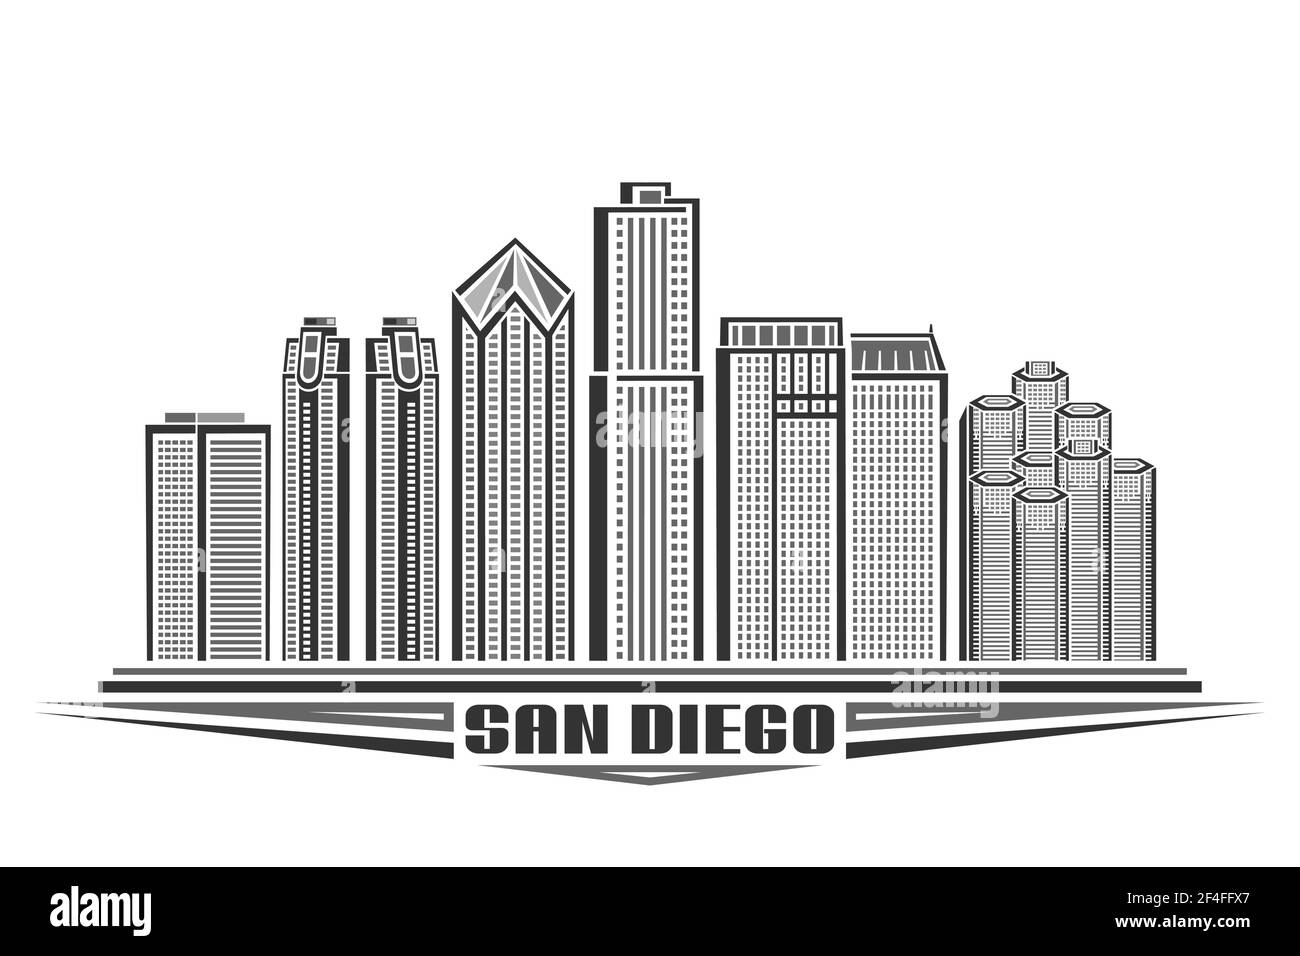 Vektor-Illustration von San Diego, monochromes horizontales Poster mit Umriss-Design der berühmten amerikanischen Stadtlandschaft, urbanes Konzept mit einzigartigen dekorativen Stock Vektor